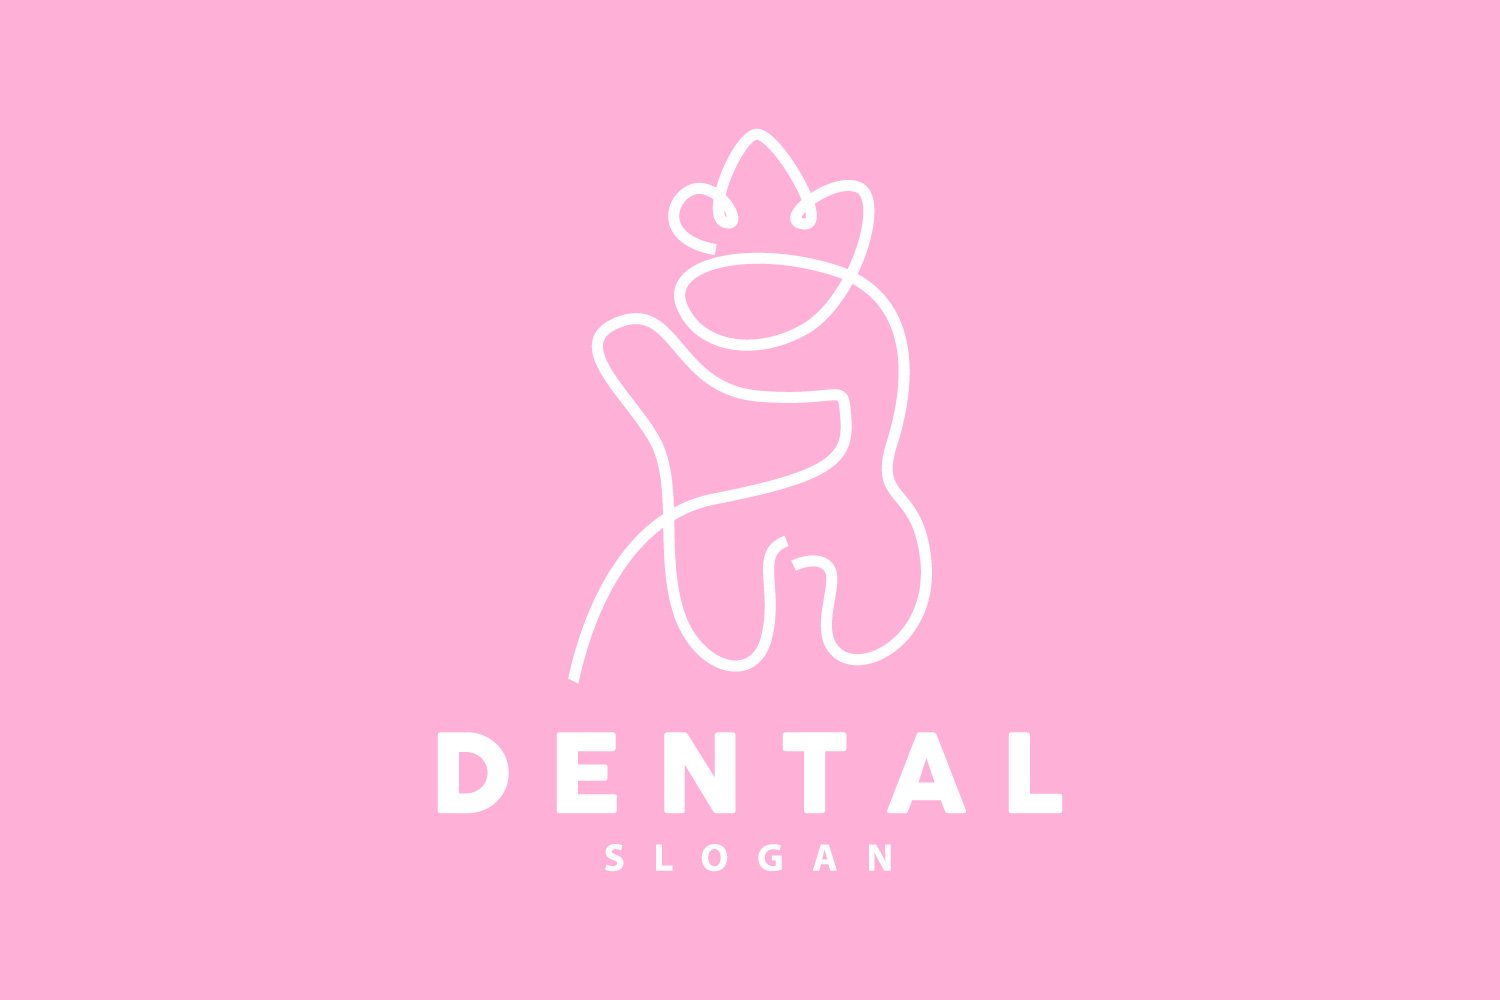 Tooth logo Dental Health Vector CareV11